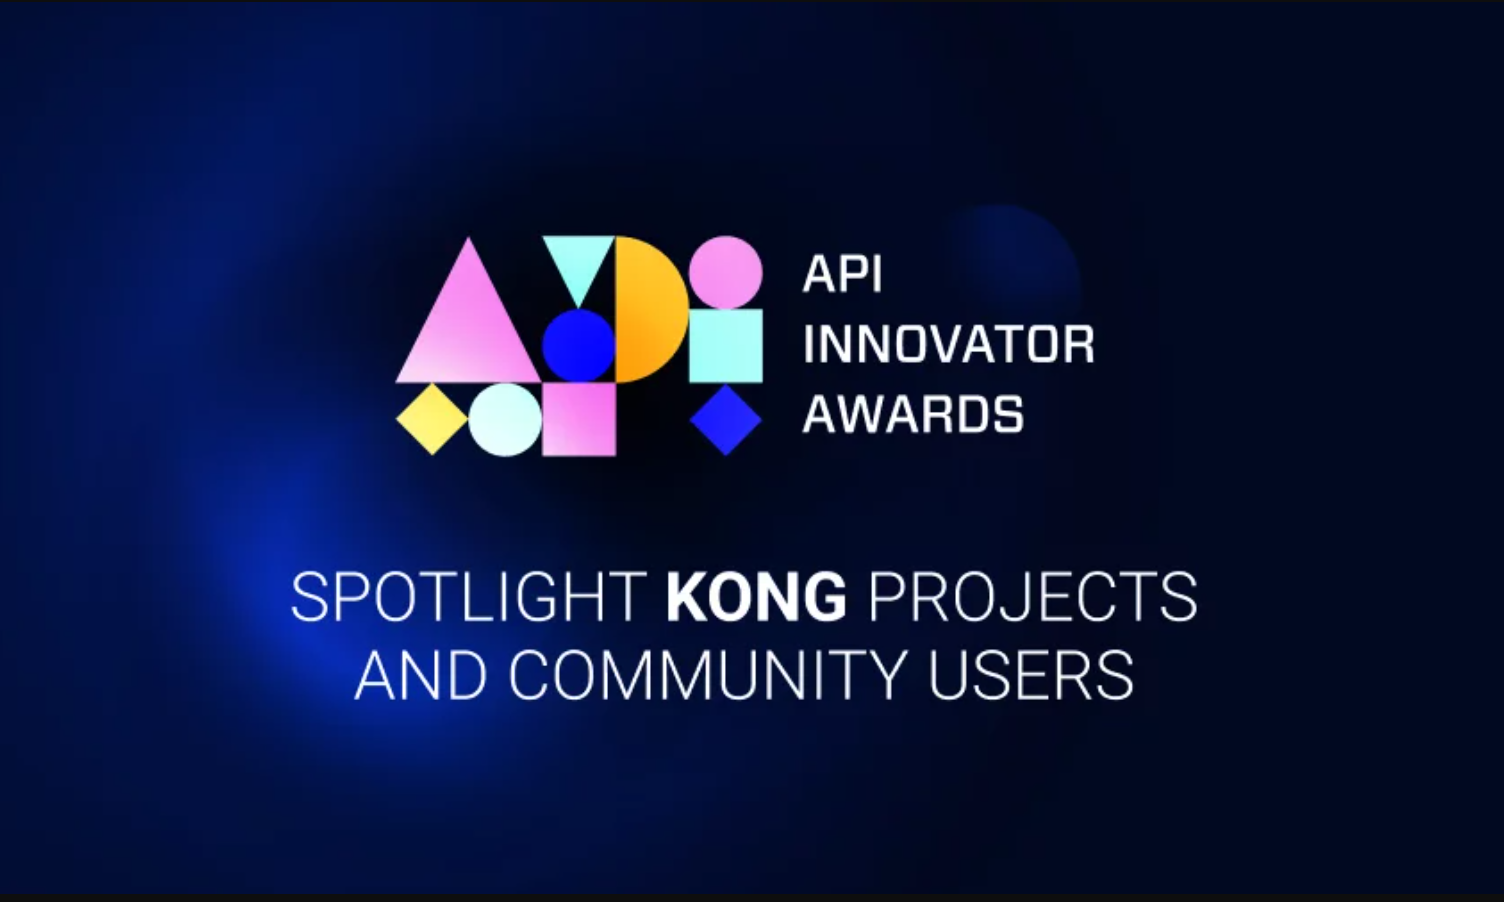 KONG API Innovator Awards